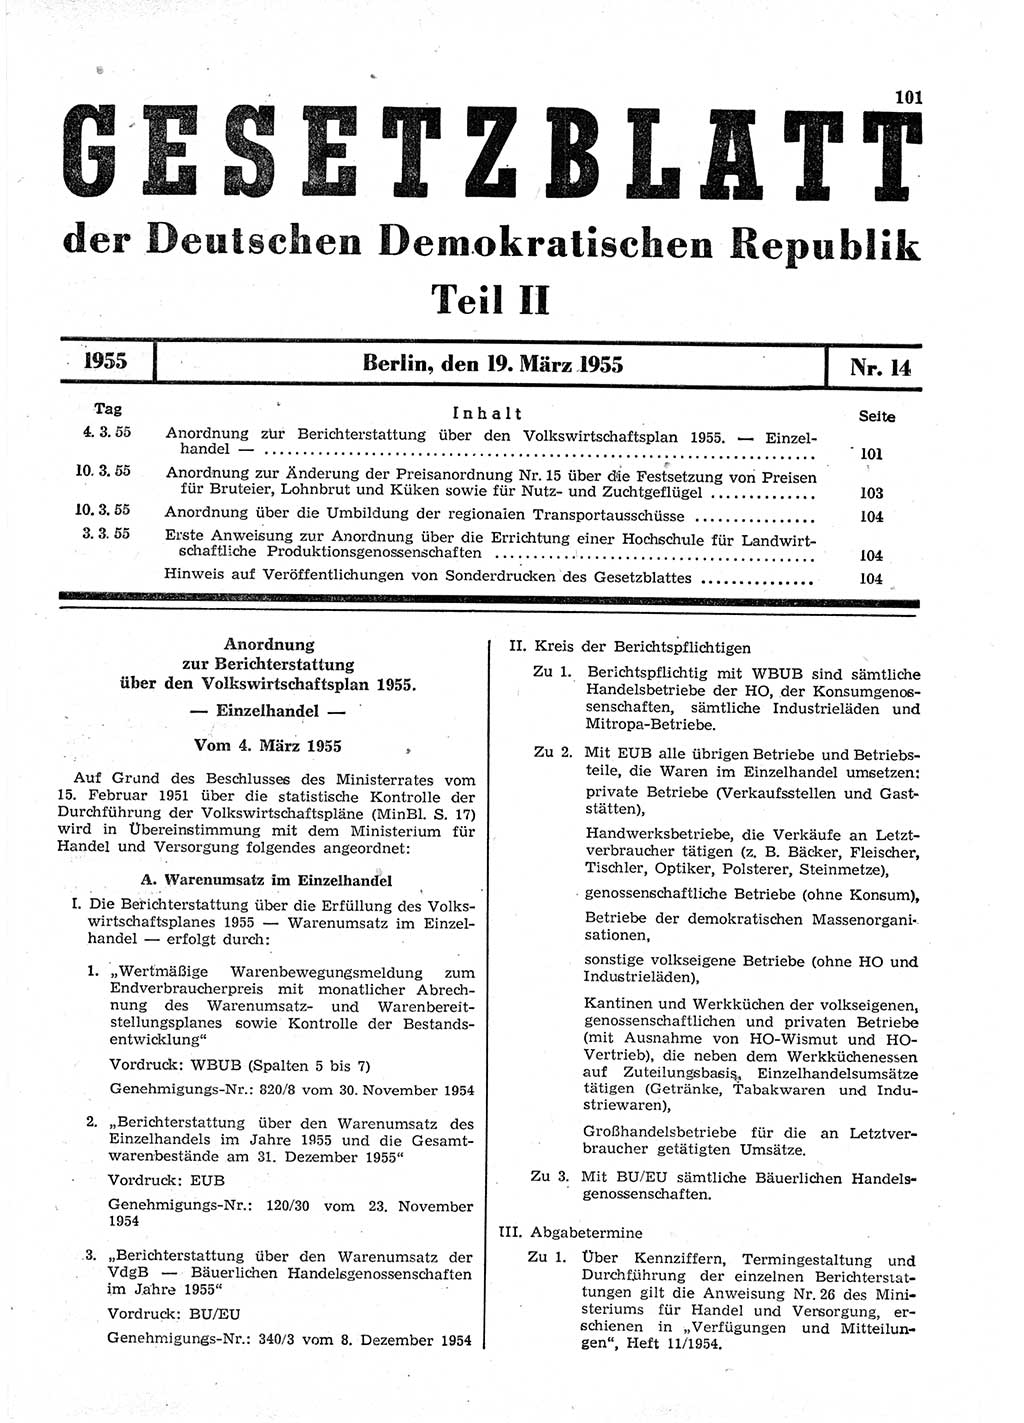 Gesetzblatt (GBl.) der Deutschen Demokratischen Republik (DDR) Teil ⅠⅠ 1955, Seite 101 (GBl. DDR ⅠⅠ 1955, S. 101)